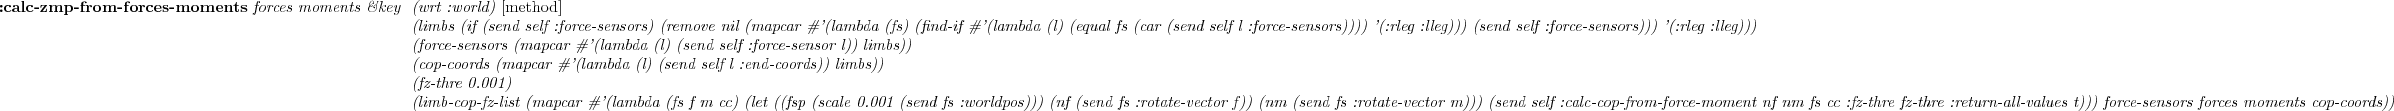 \begin{emtabbing} {\bf :fix-leg-to-coords} \it fix-coords
\&optional (l/r :both) \&key \= (mid 0.5) \\lq [method]\\
\> \&allow-other-keys \rm
\end{emtabbing}